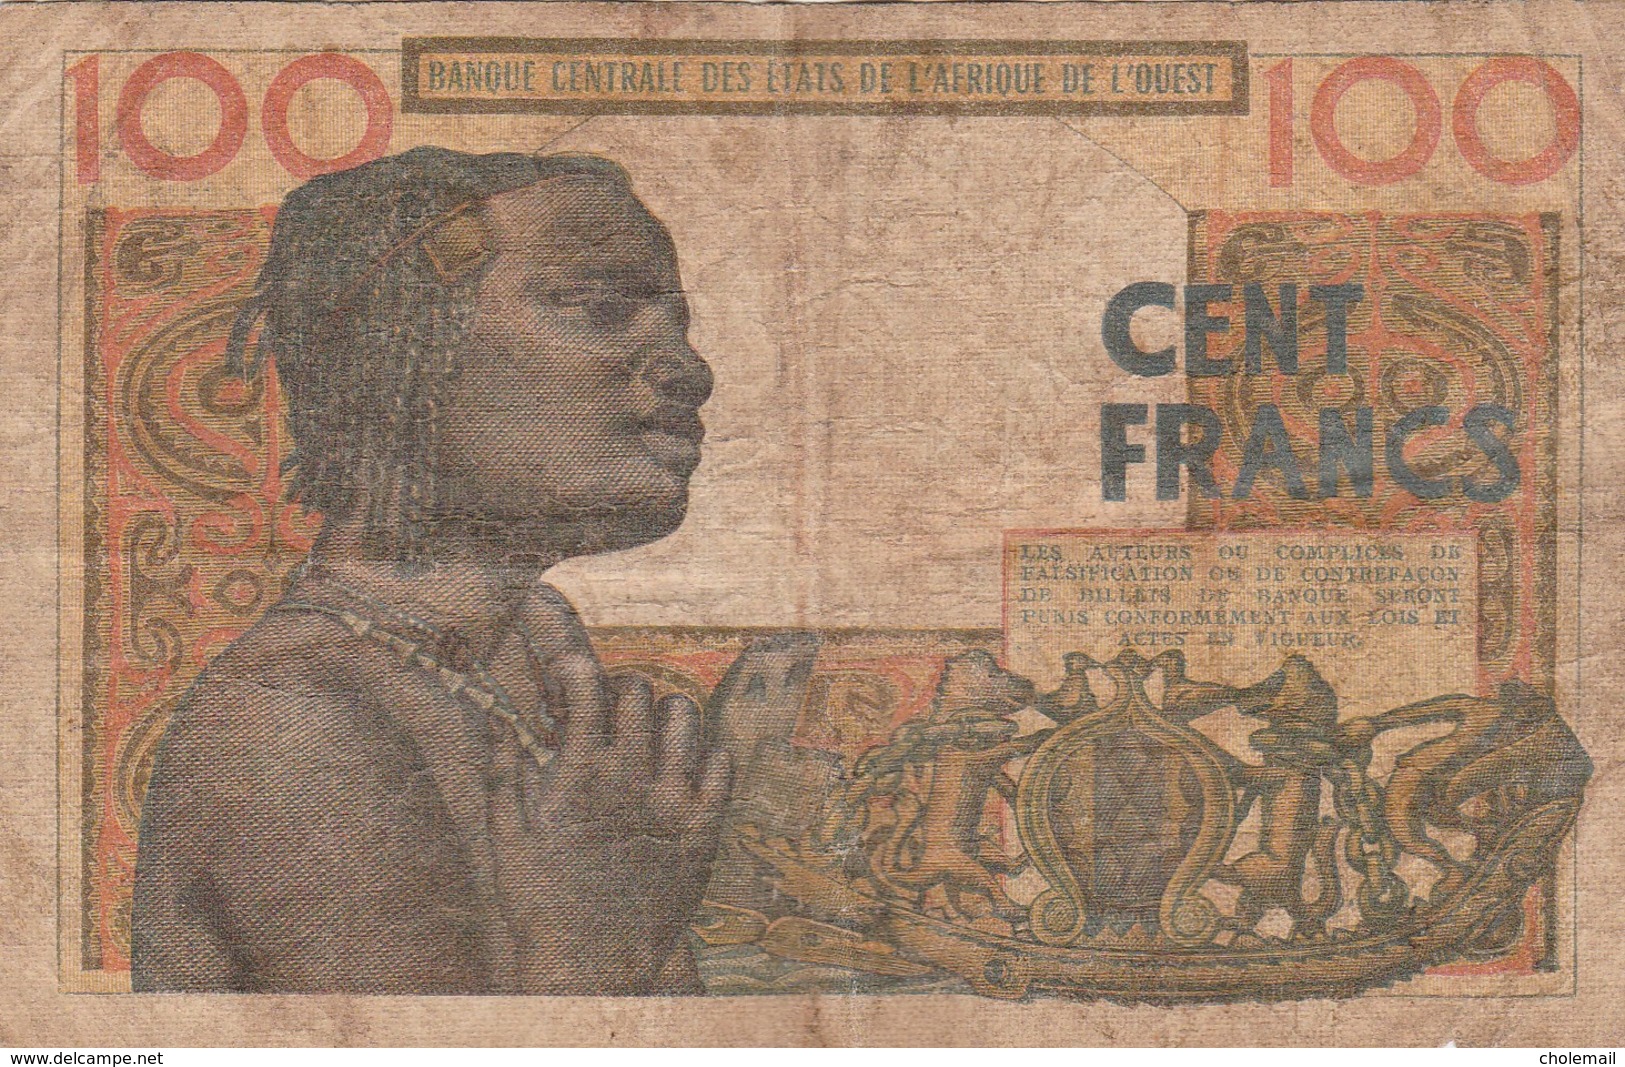 BCEAO - 100 F - Banque Centrale Des Etats De L'Afrique De L'Ouest - 20/03/1961 - West African States